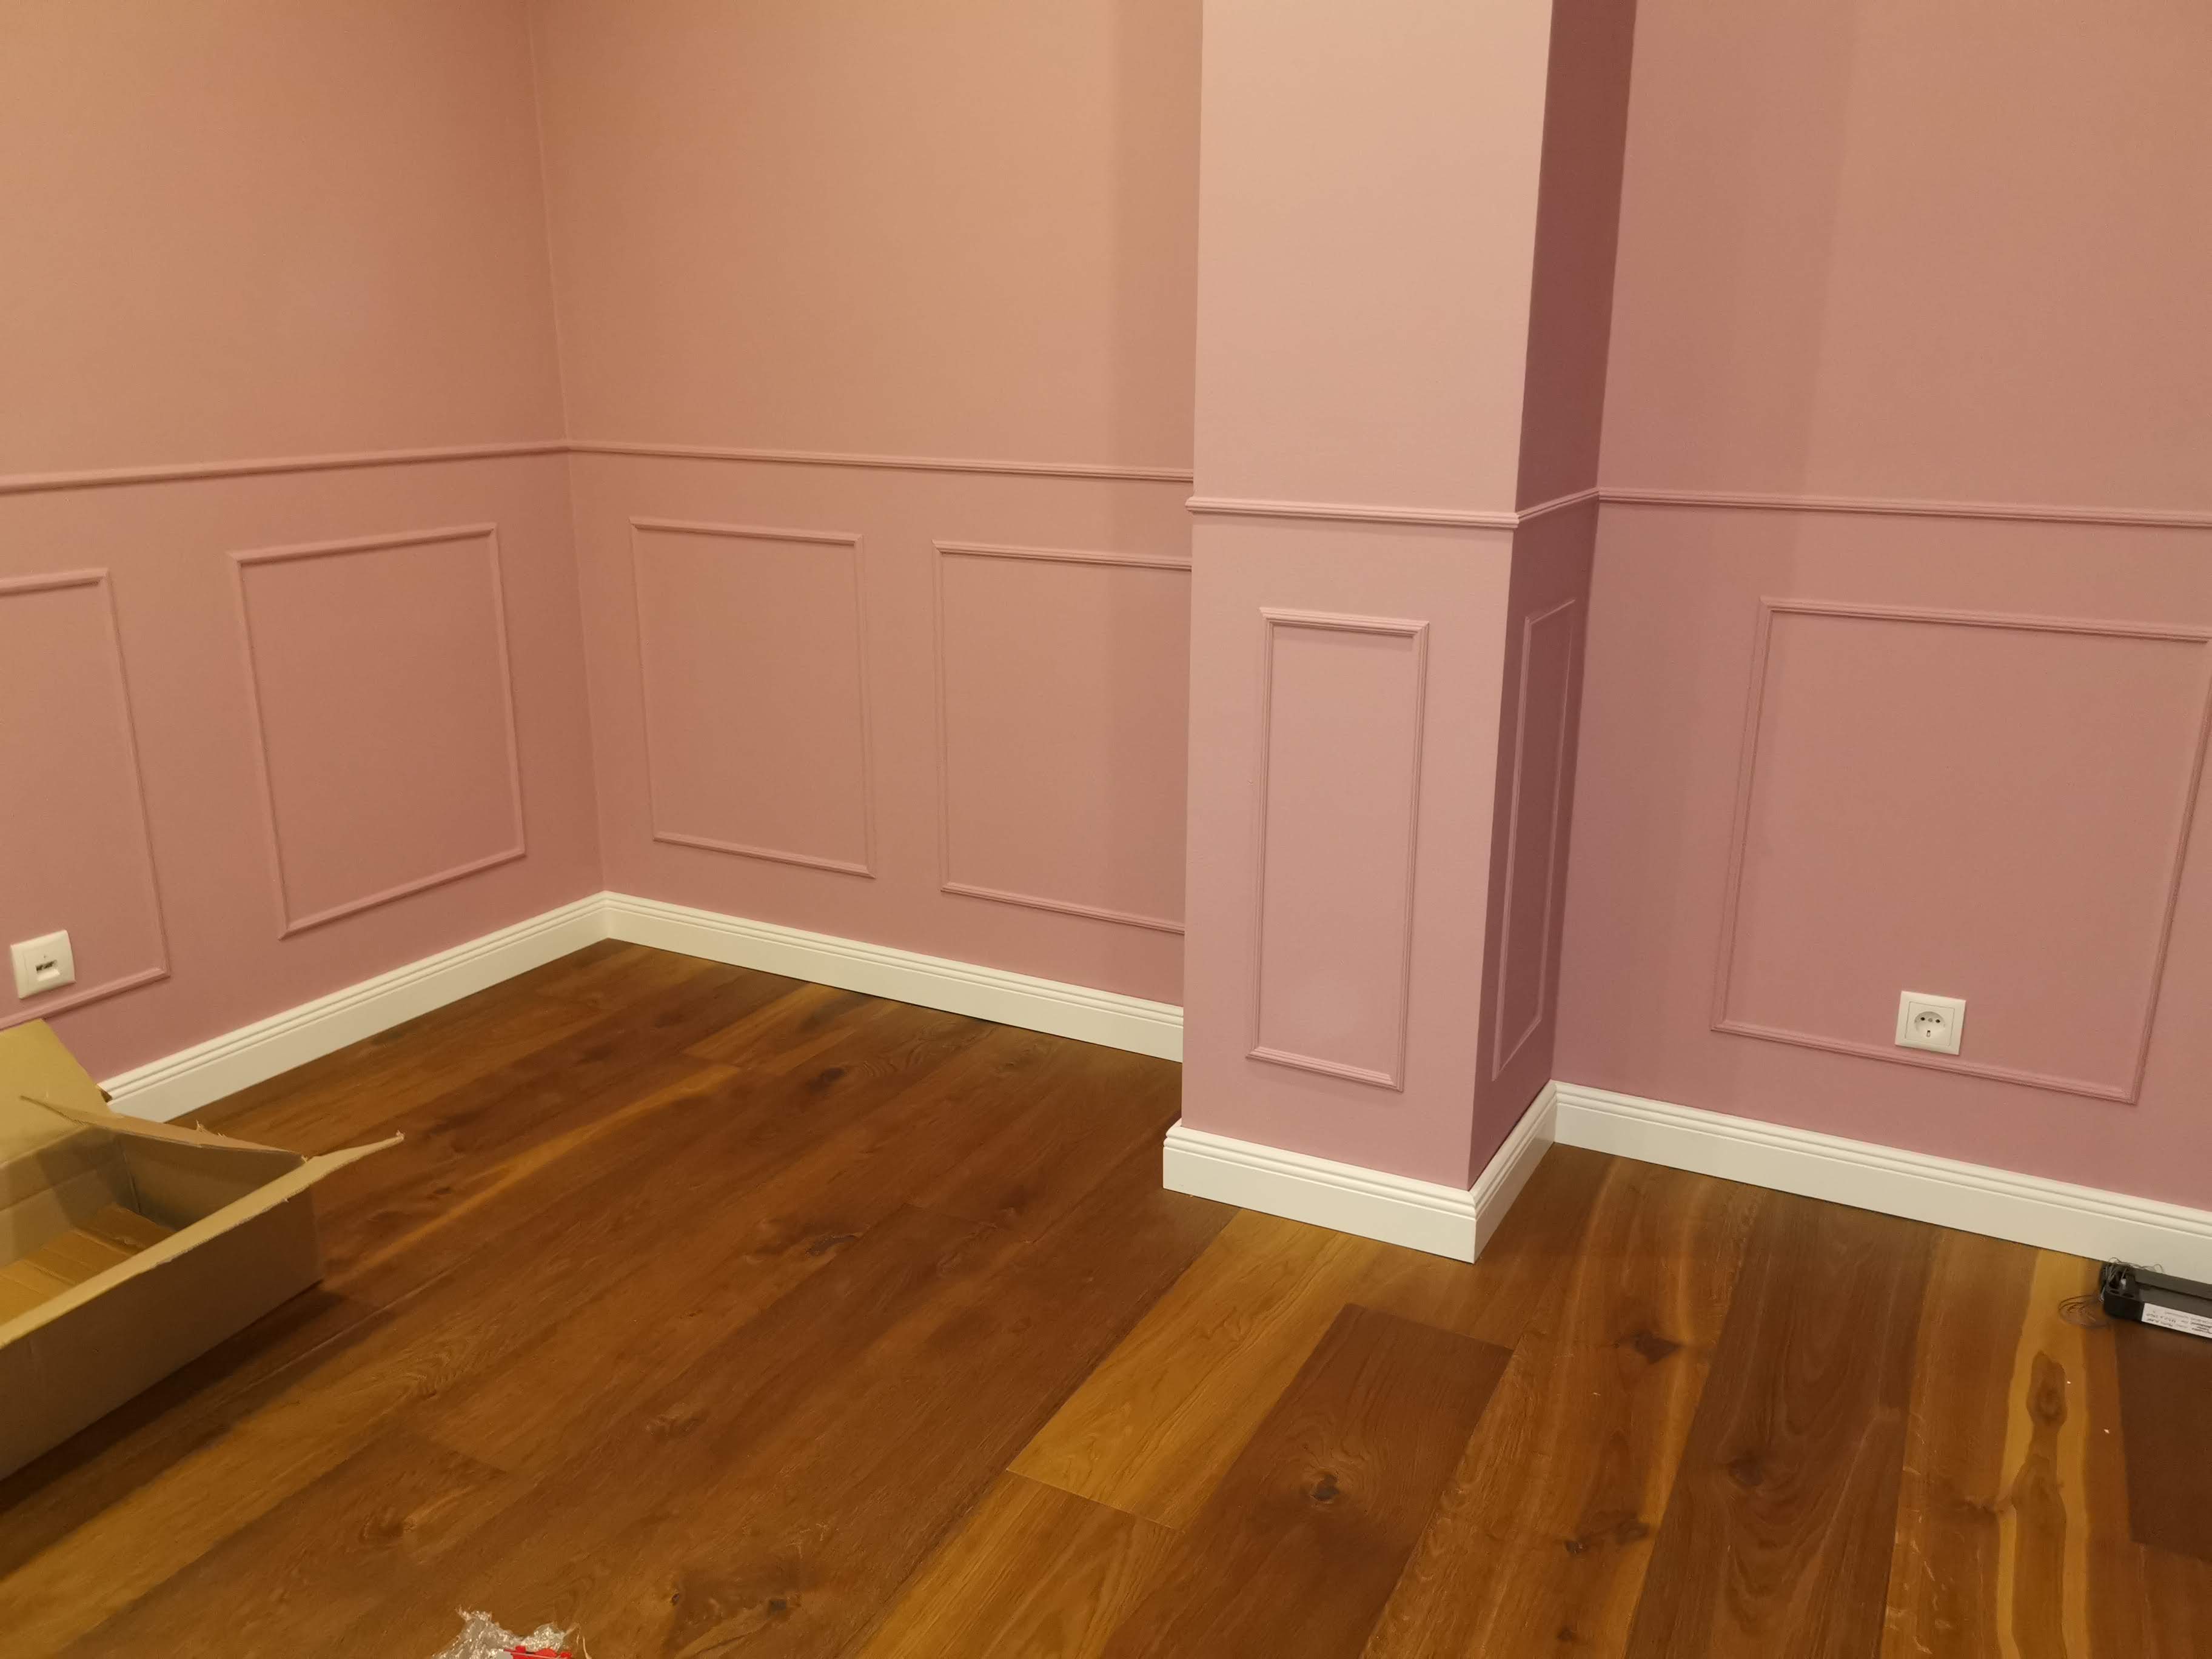 Innenansicht eines rosa gestrichenen Raumes mit Vertäfelung und einem harten Boden